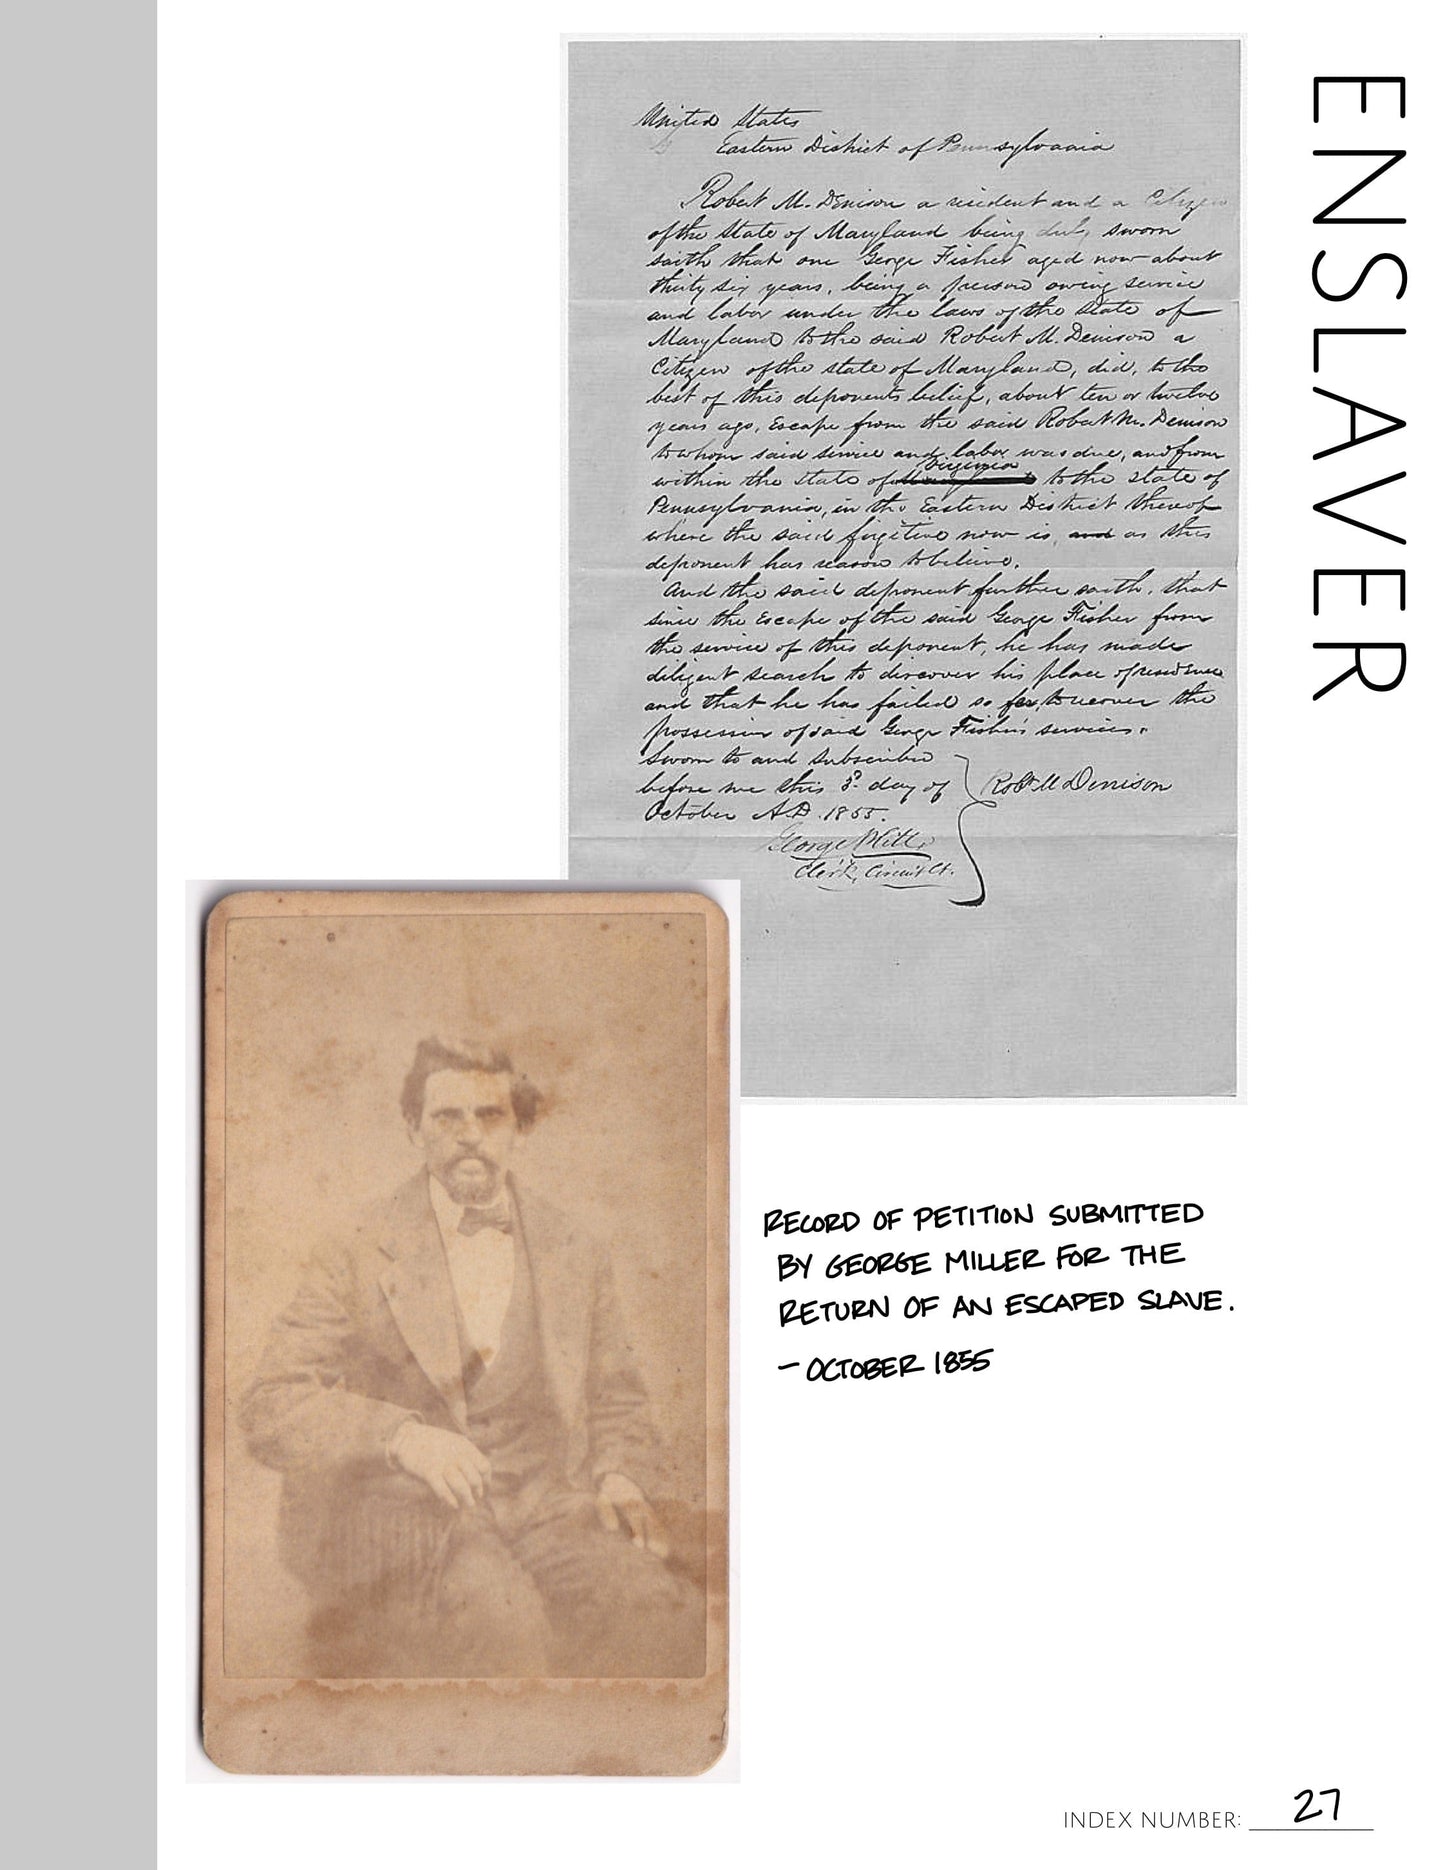 Enslaver: Printable Genealogy Form (Digital Download)